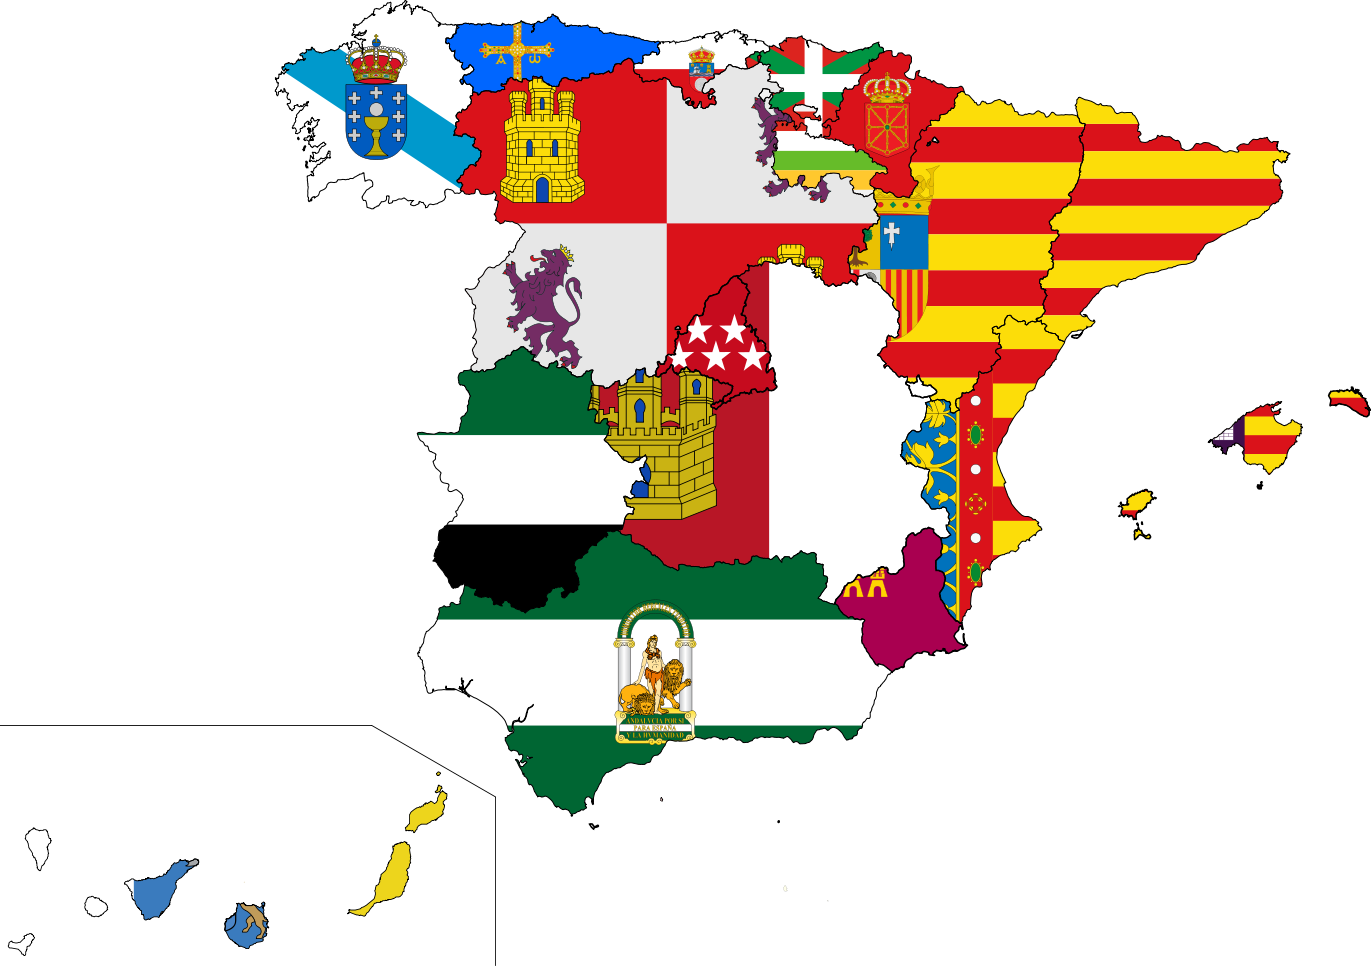 按自治区划分 I 西班牙大学及地区分布 